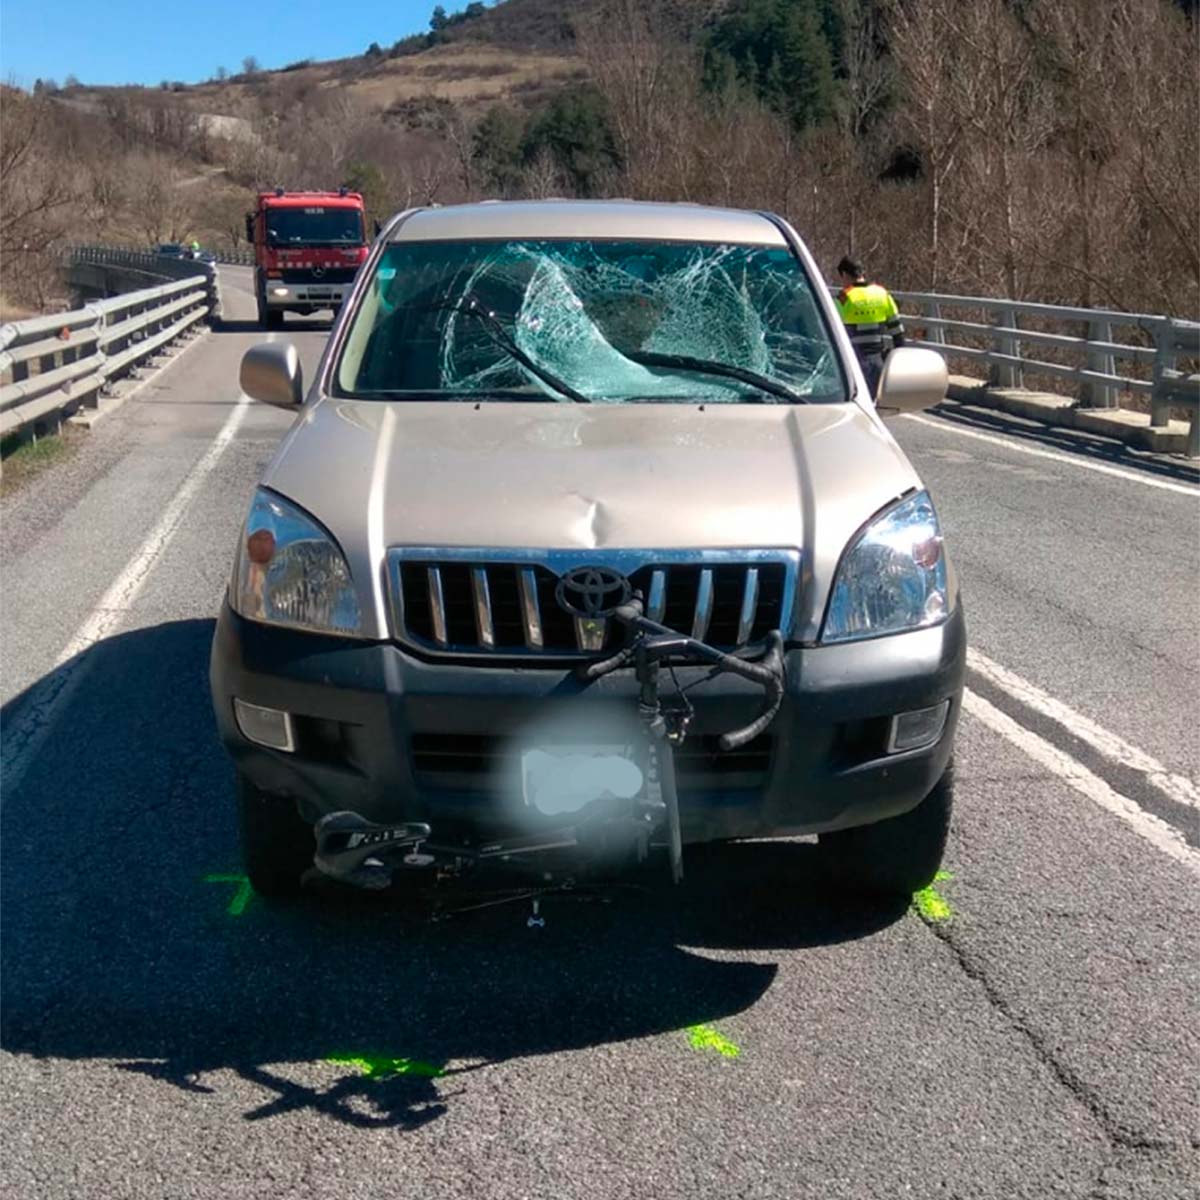 En TodoMountainBike: Muere un ciclista en Martinet (Lleida) tras ser arrollado por un vehículo